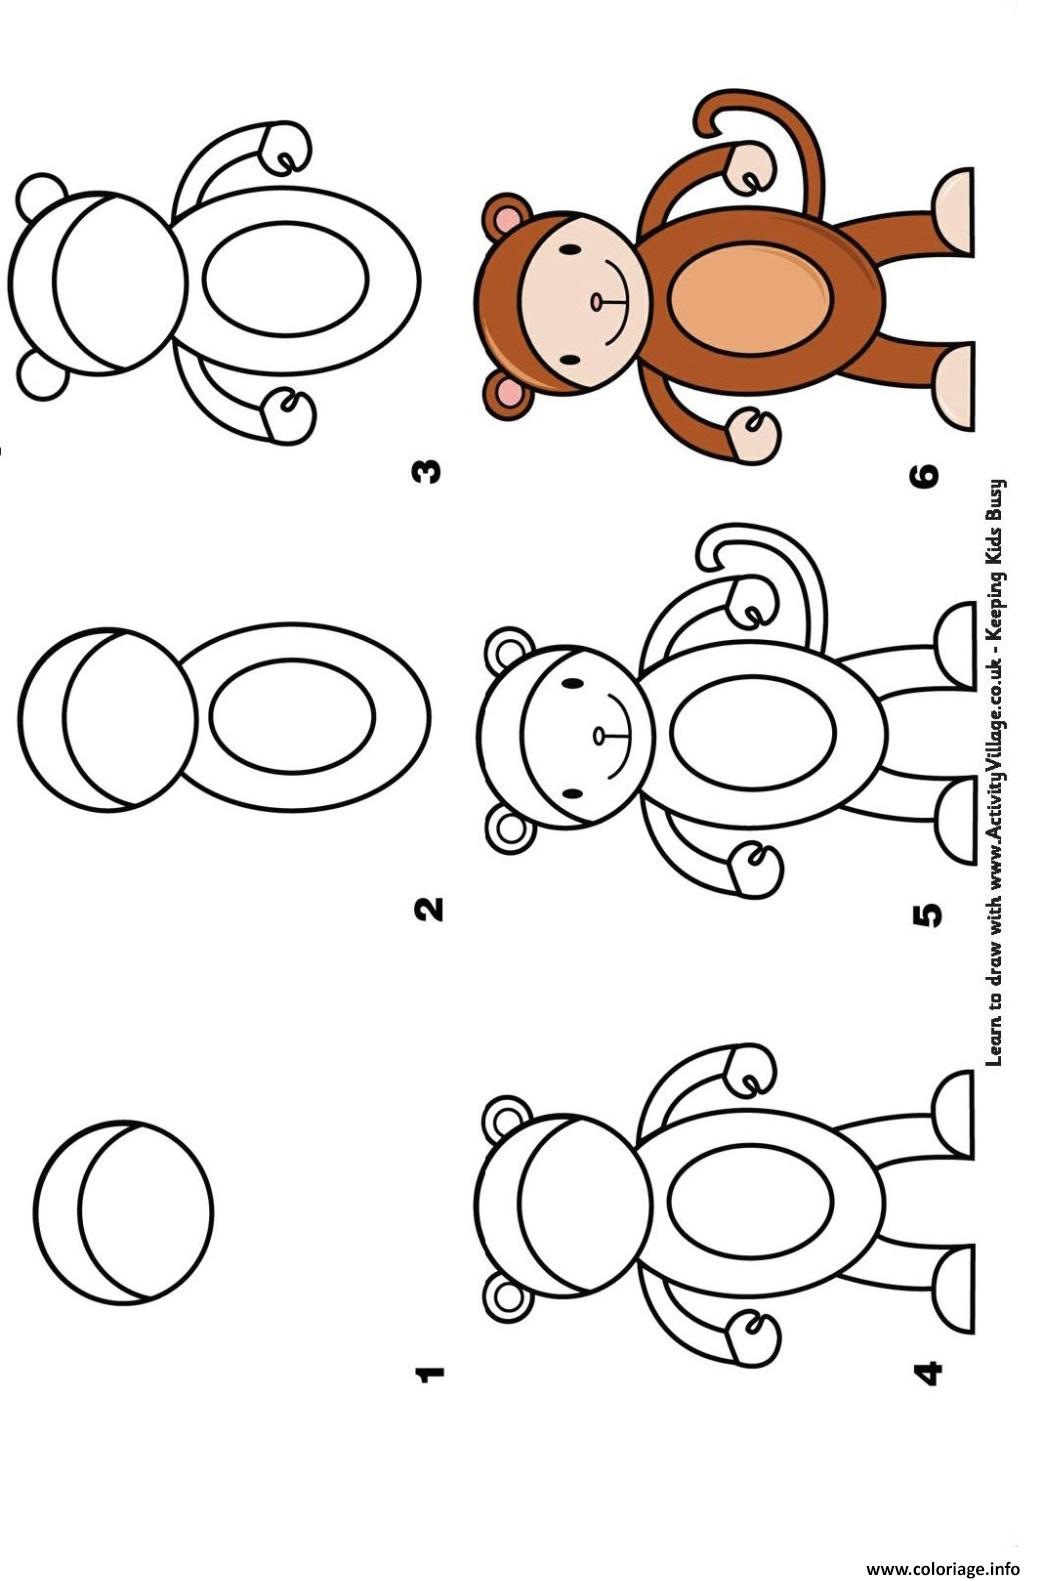 Coloriage comment dessiner un singe etape par etape - JeColorie.com